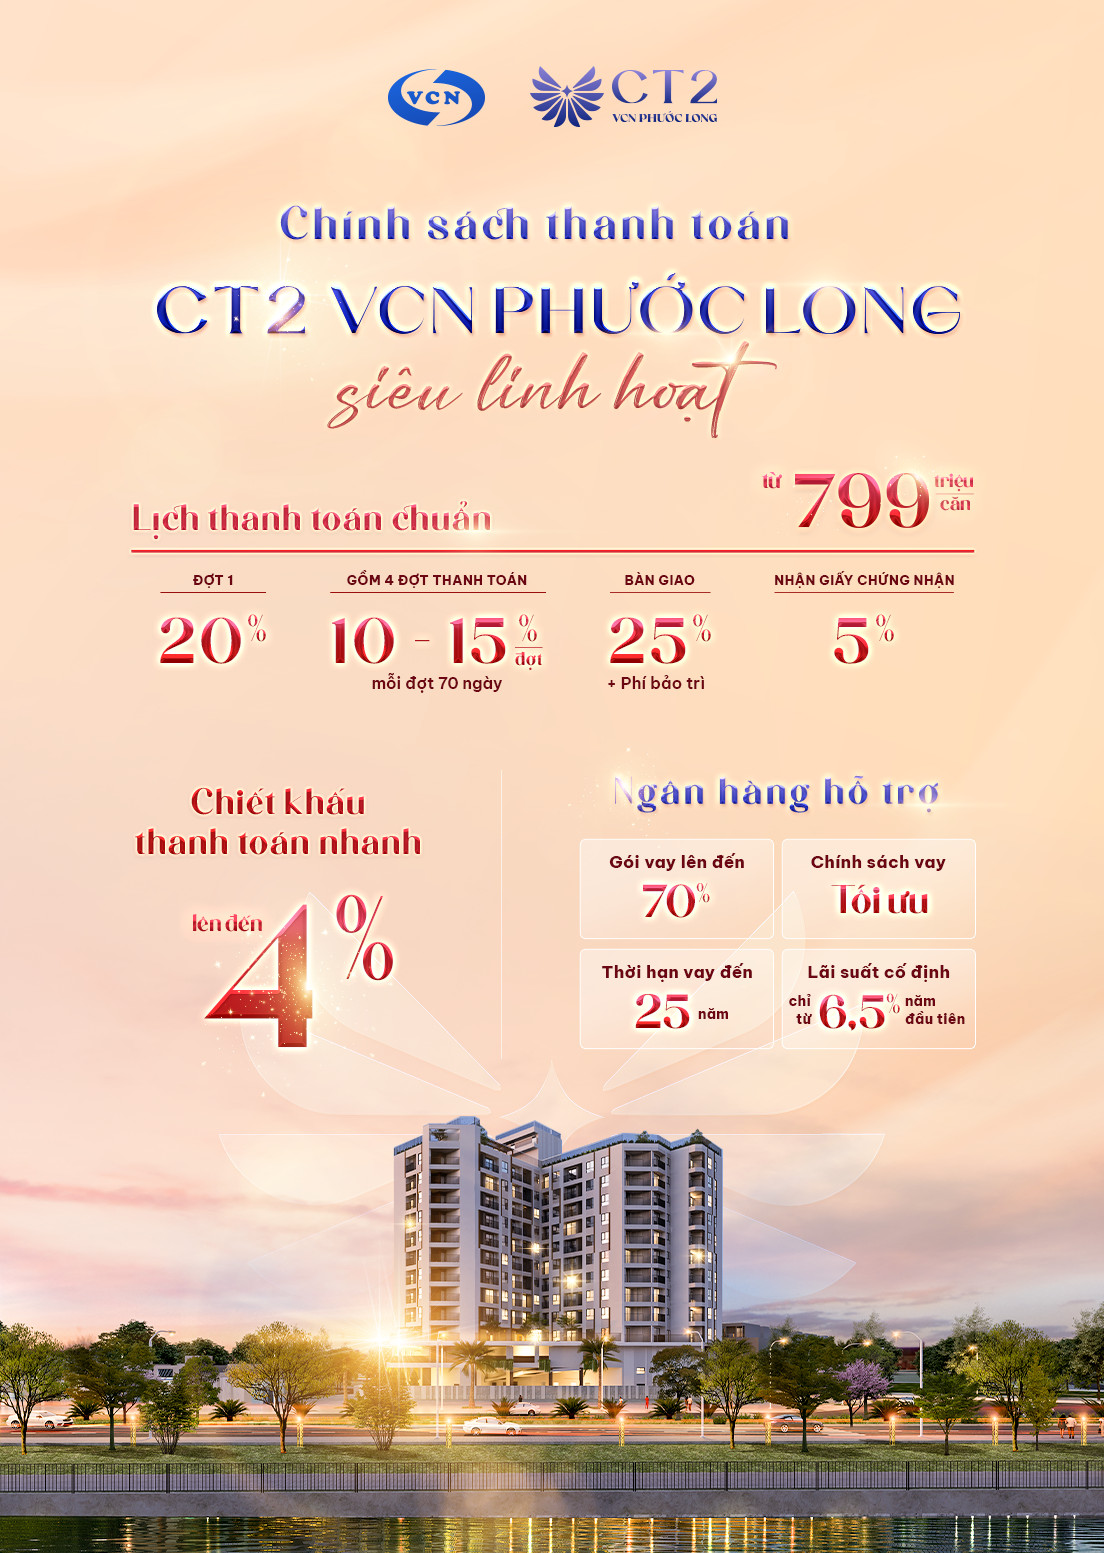 Mở bán căn hộ cao cấp CT2 VCN Phước Long chỉ từ 799 triệu đồng - Ảnh 2.